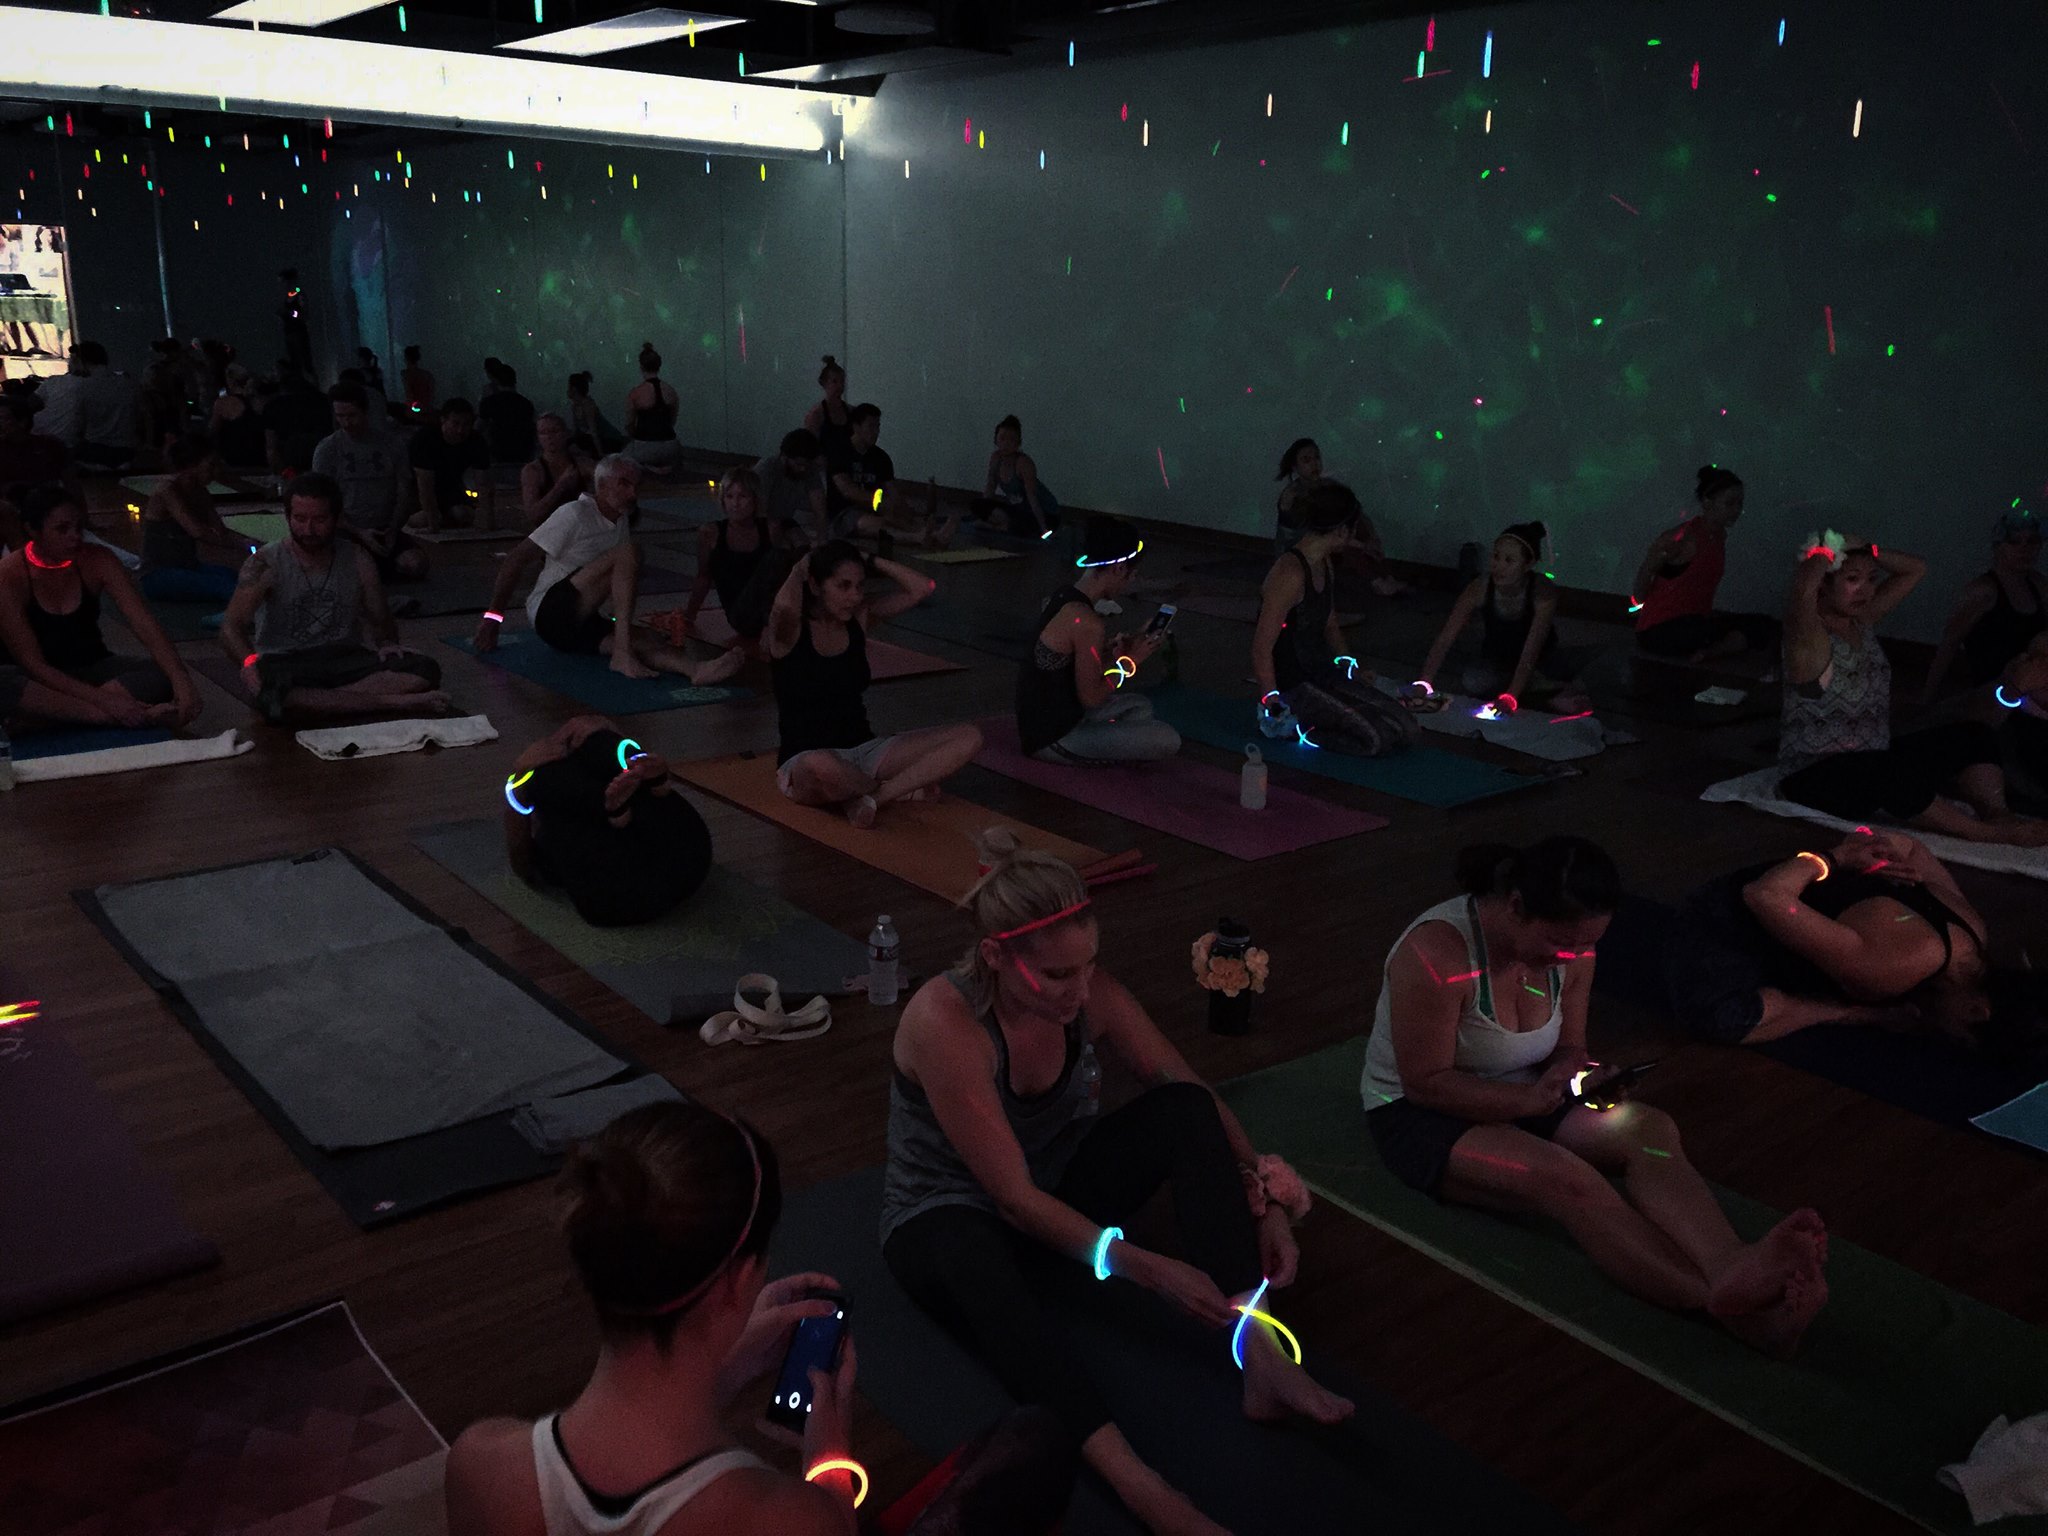 Spectra Yoga Studio 